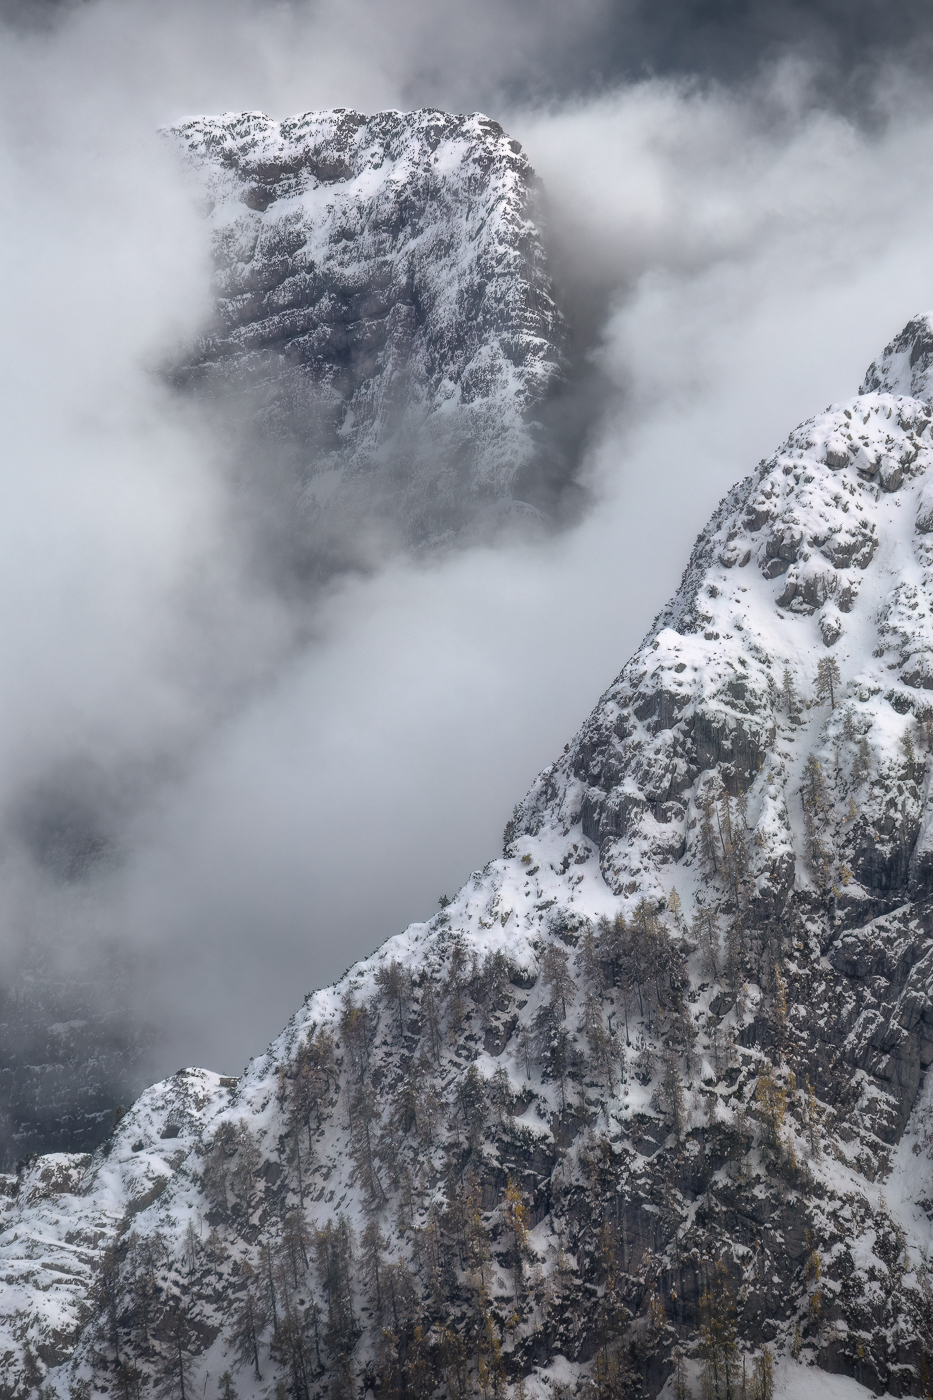 Colossali titani di roccia fanno breccia tra le nubi di una fredda giornata tardo autunnale. I larici si mettono al riparo come possono. Alpi Giulie, Italia.